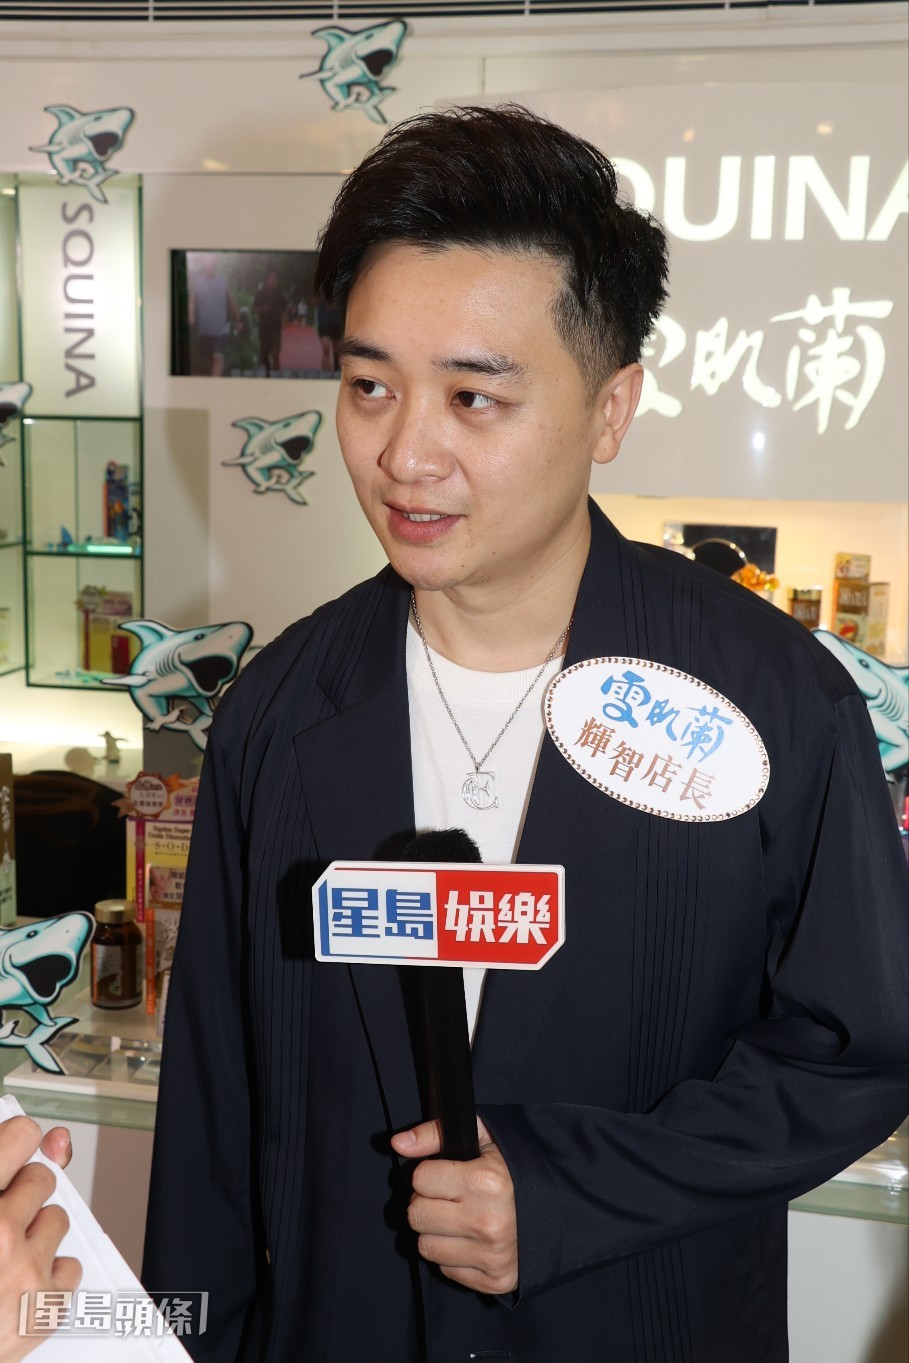 谭辉智表示在首映礼上有与霆锋握手和倾了一、两句。